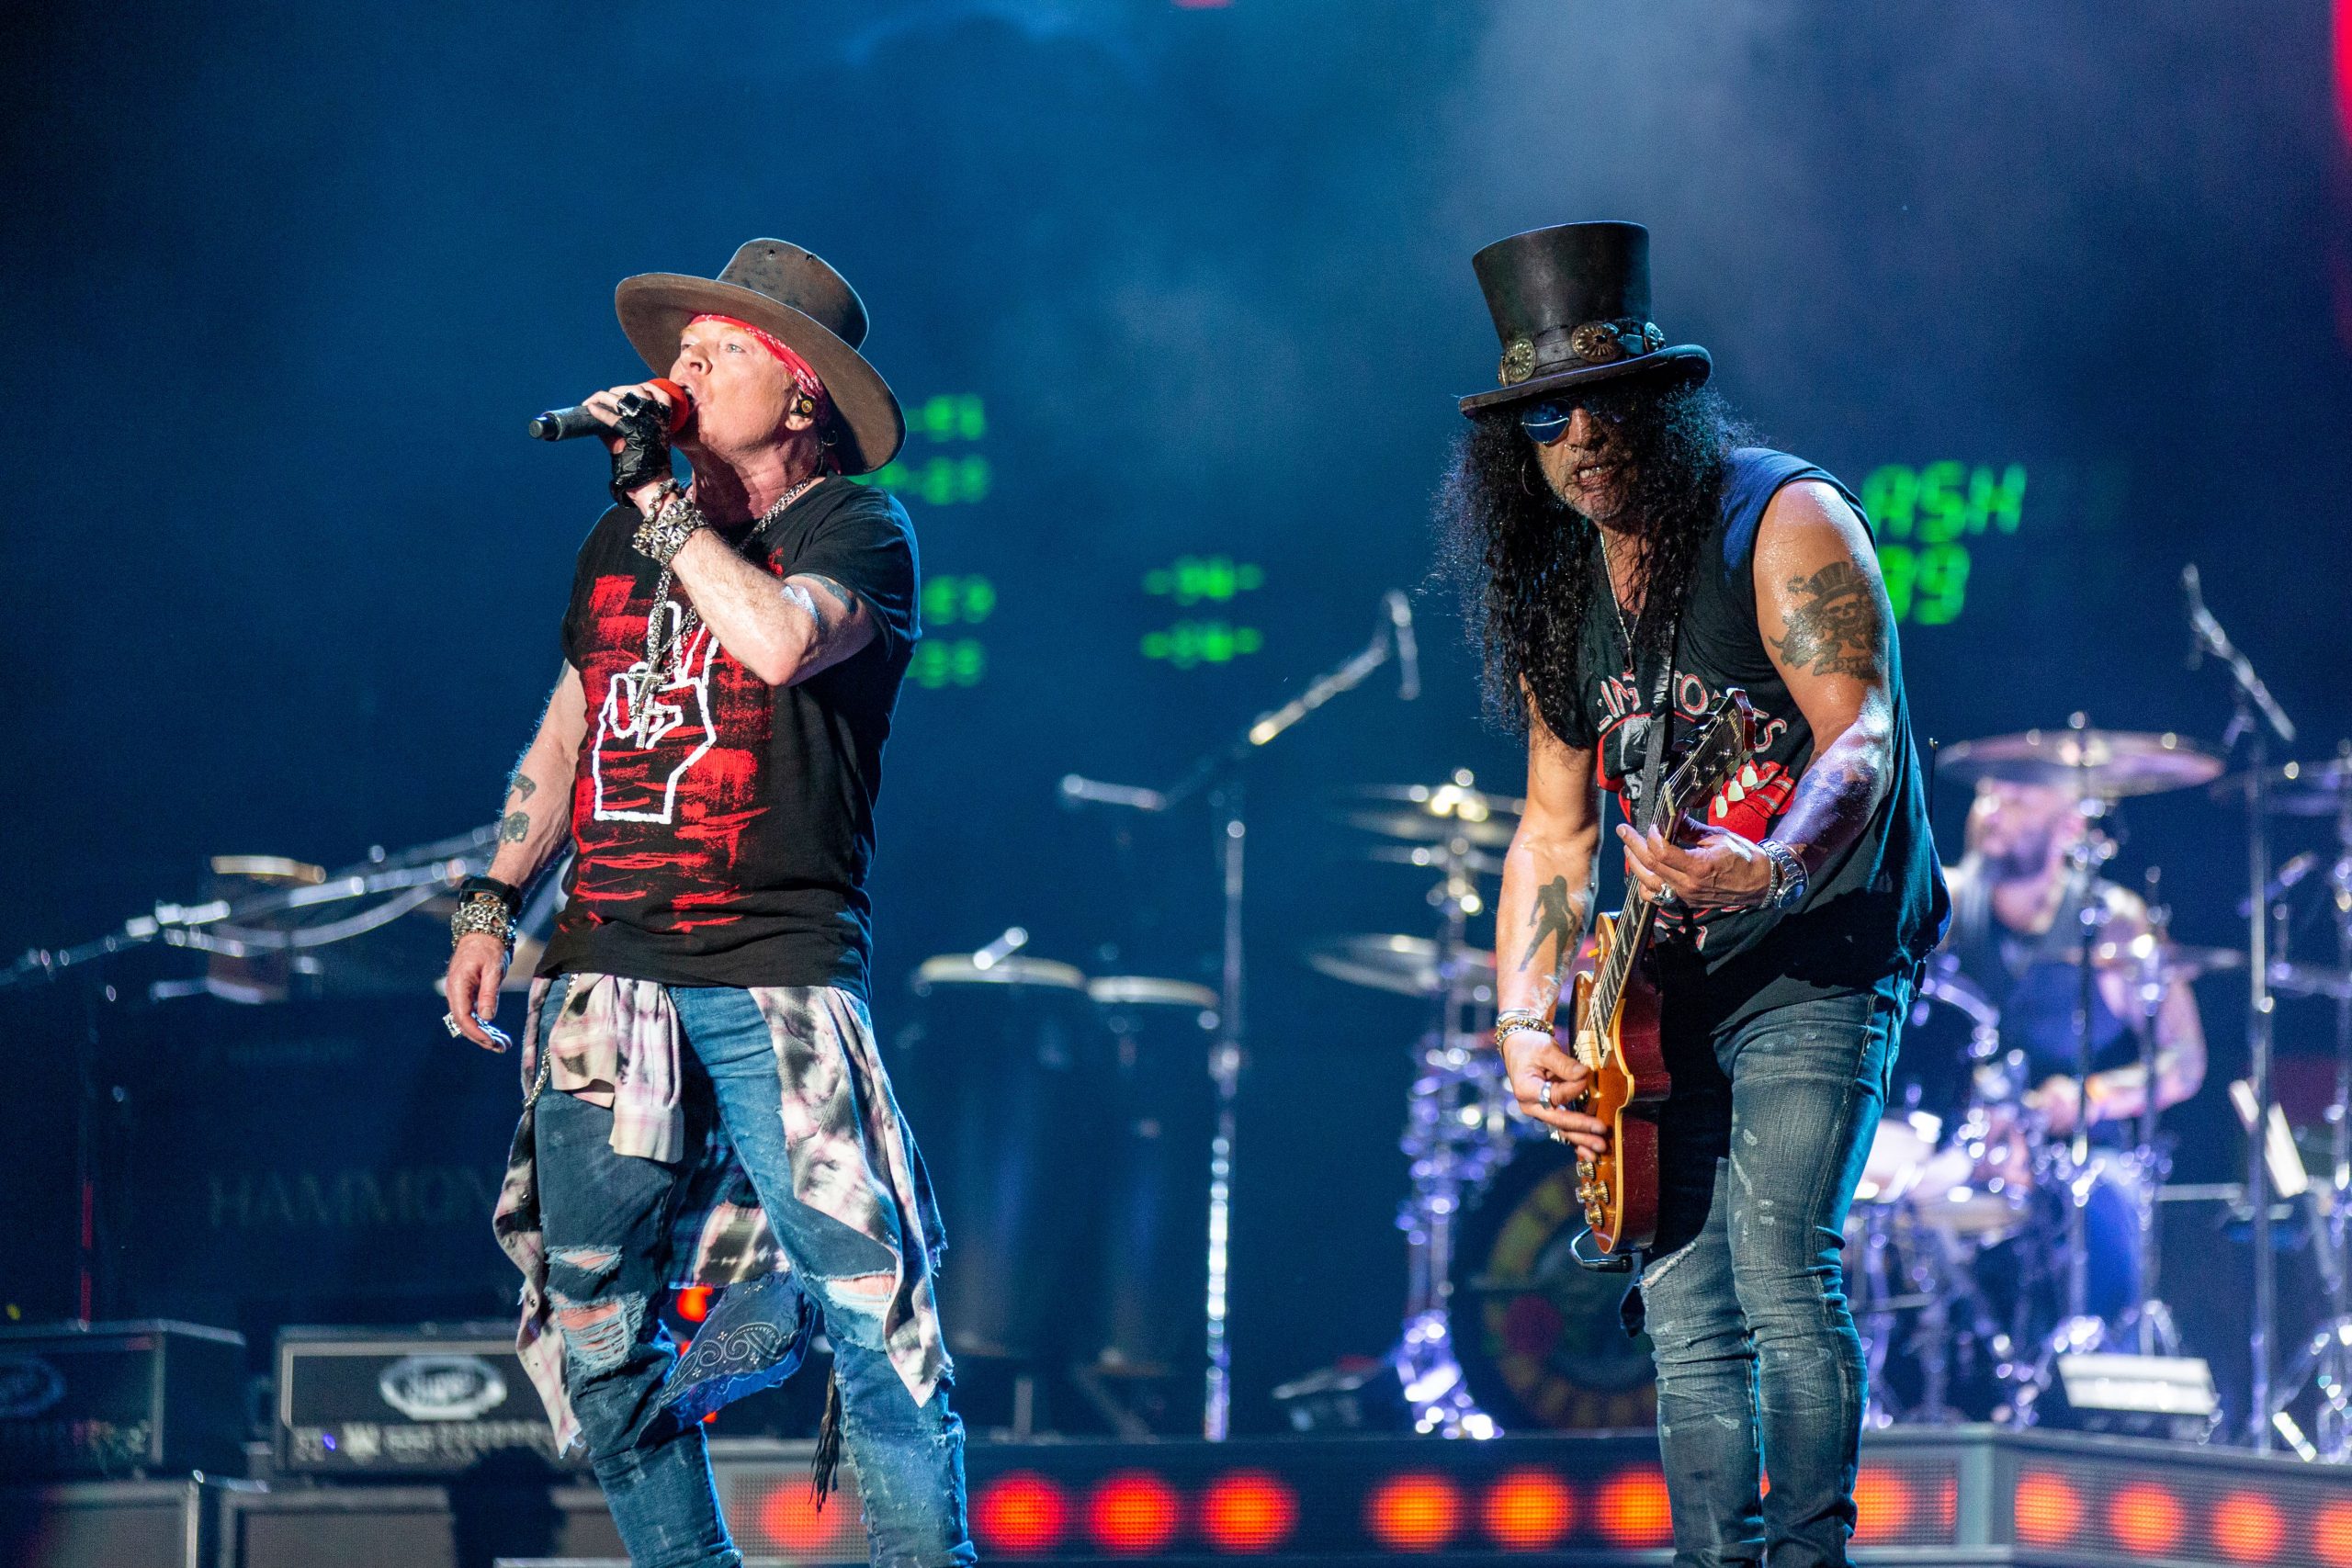 Ποιος κορωνοϊός; Οι Guns N’ Roses έκαναν συναυλία με 40.000 θεατές (φώτο – βίντεο)